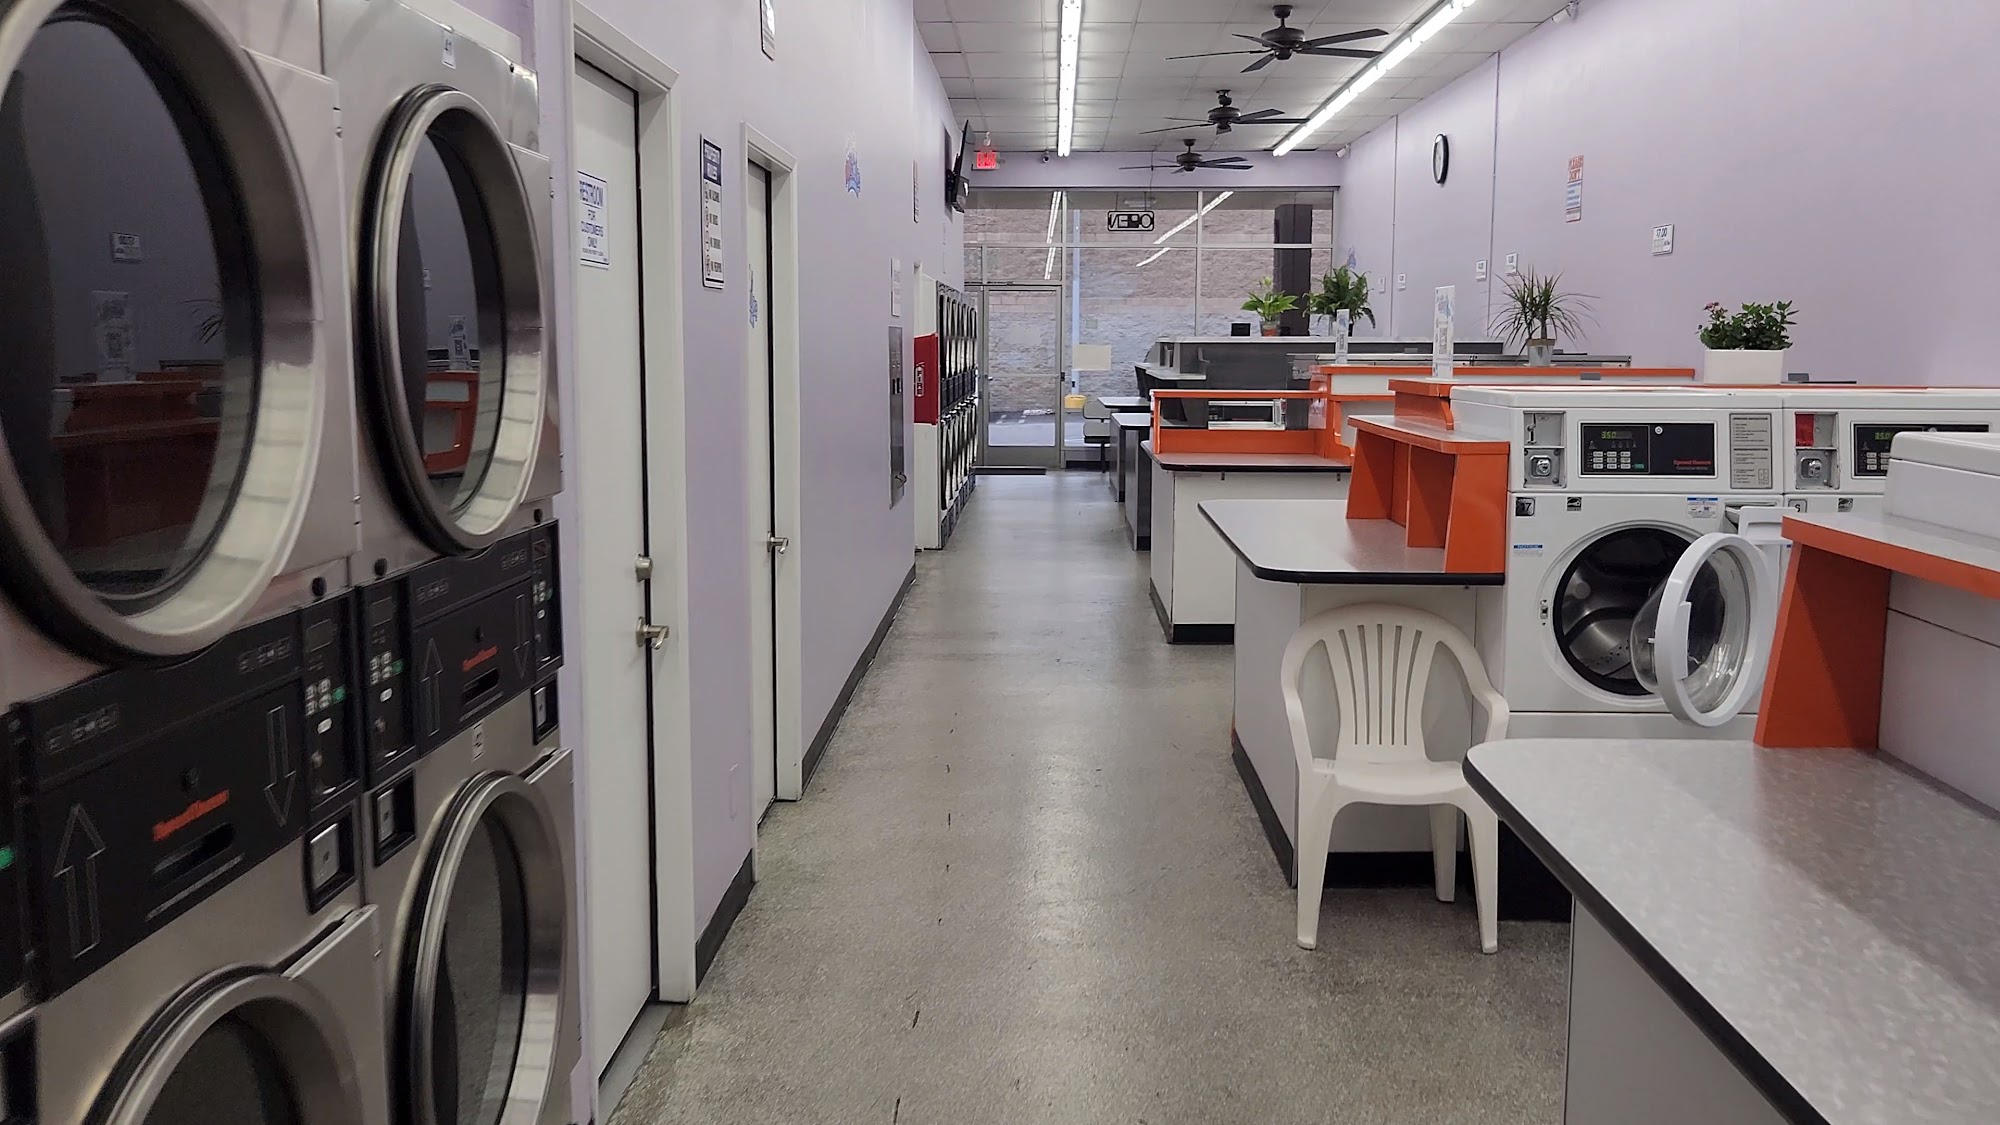 CC's Wash House Laundromat - Lavanderia